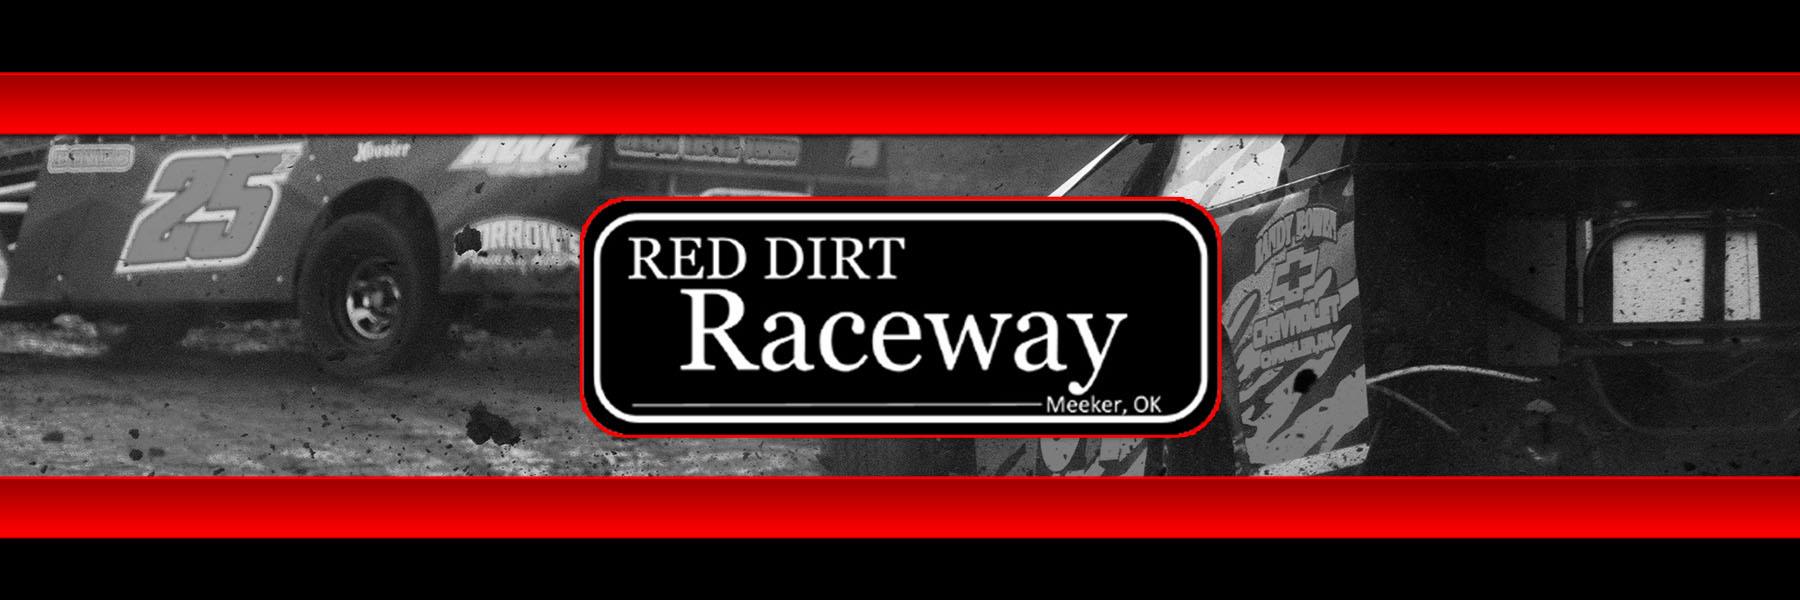 10/23/2021 - Red Dirt Raceway